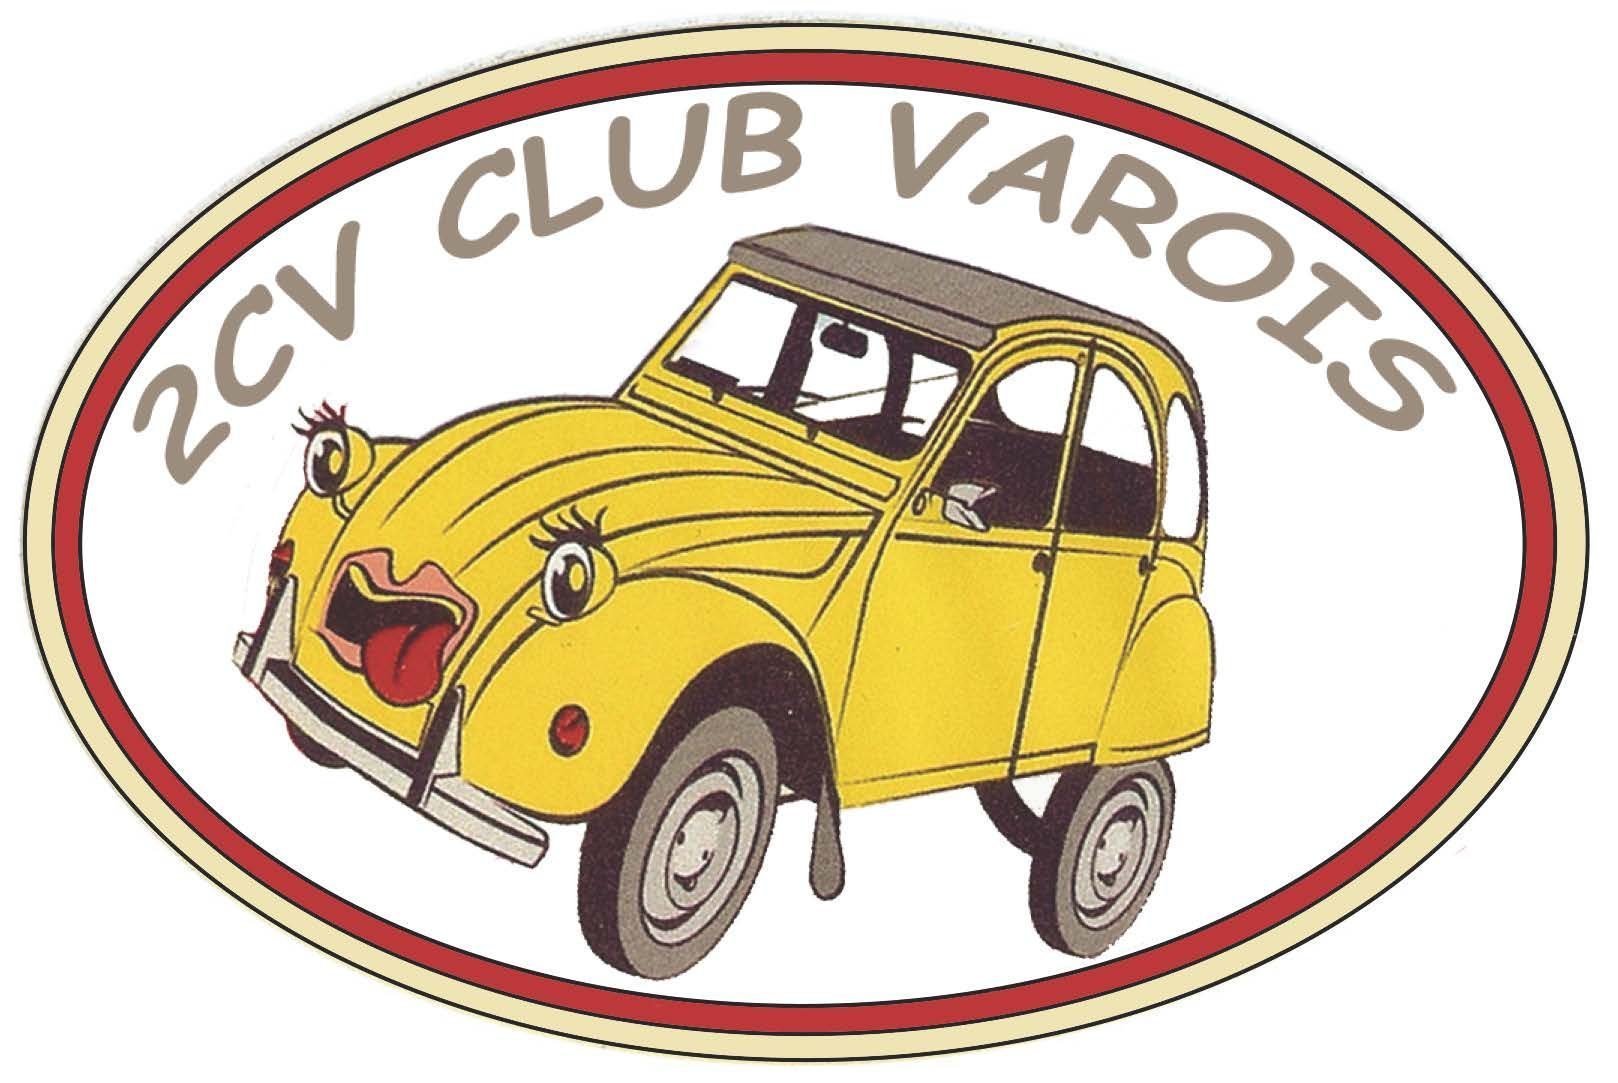 2cv Club Varois